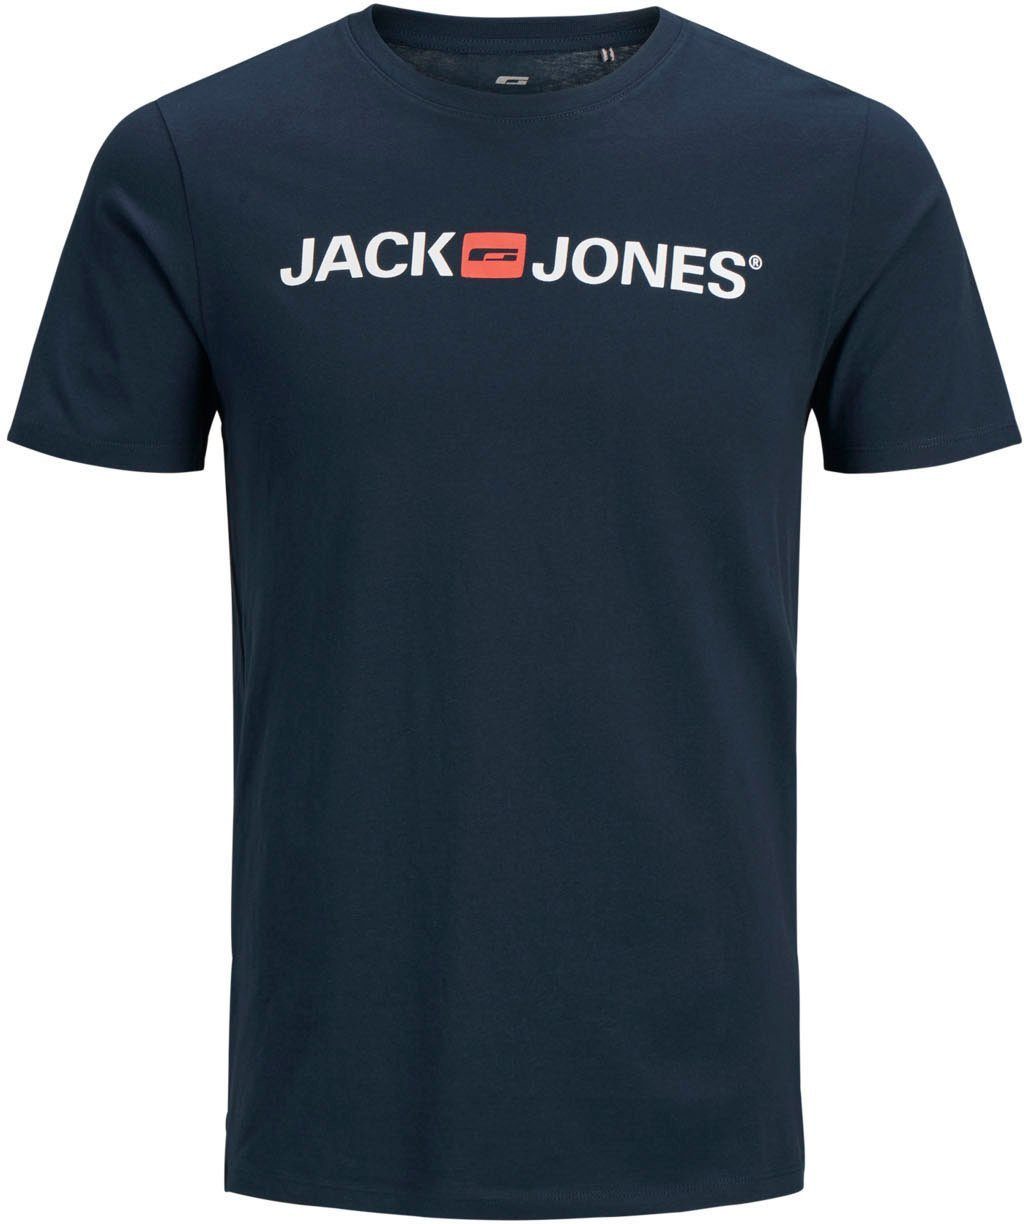 PlusSize Größe CORP bis navy 6XL LOGO TEE Jones & Jack T-Shirt